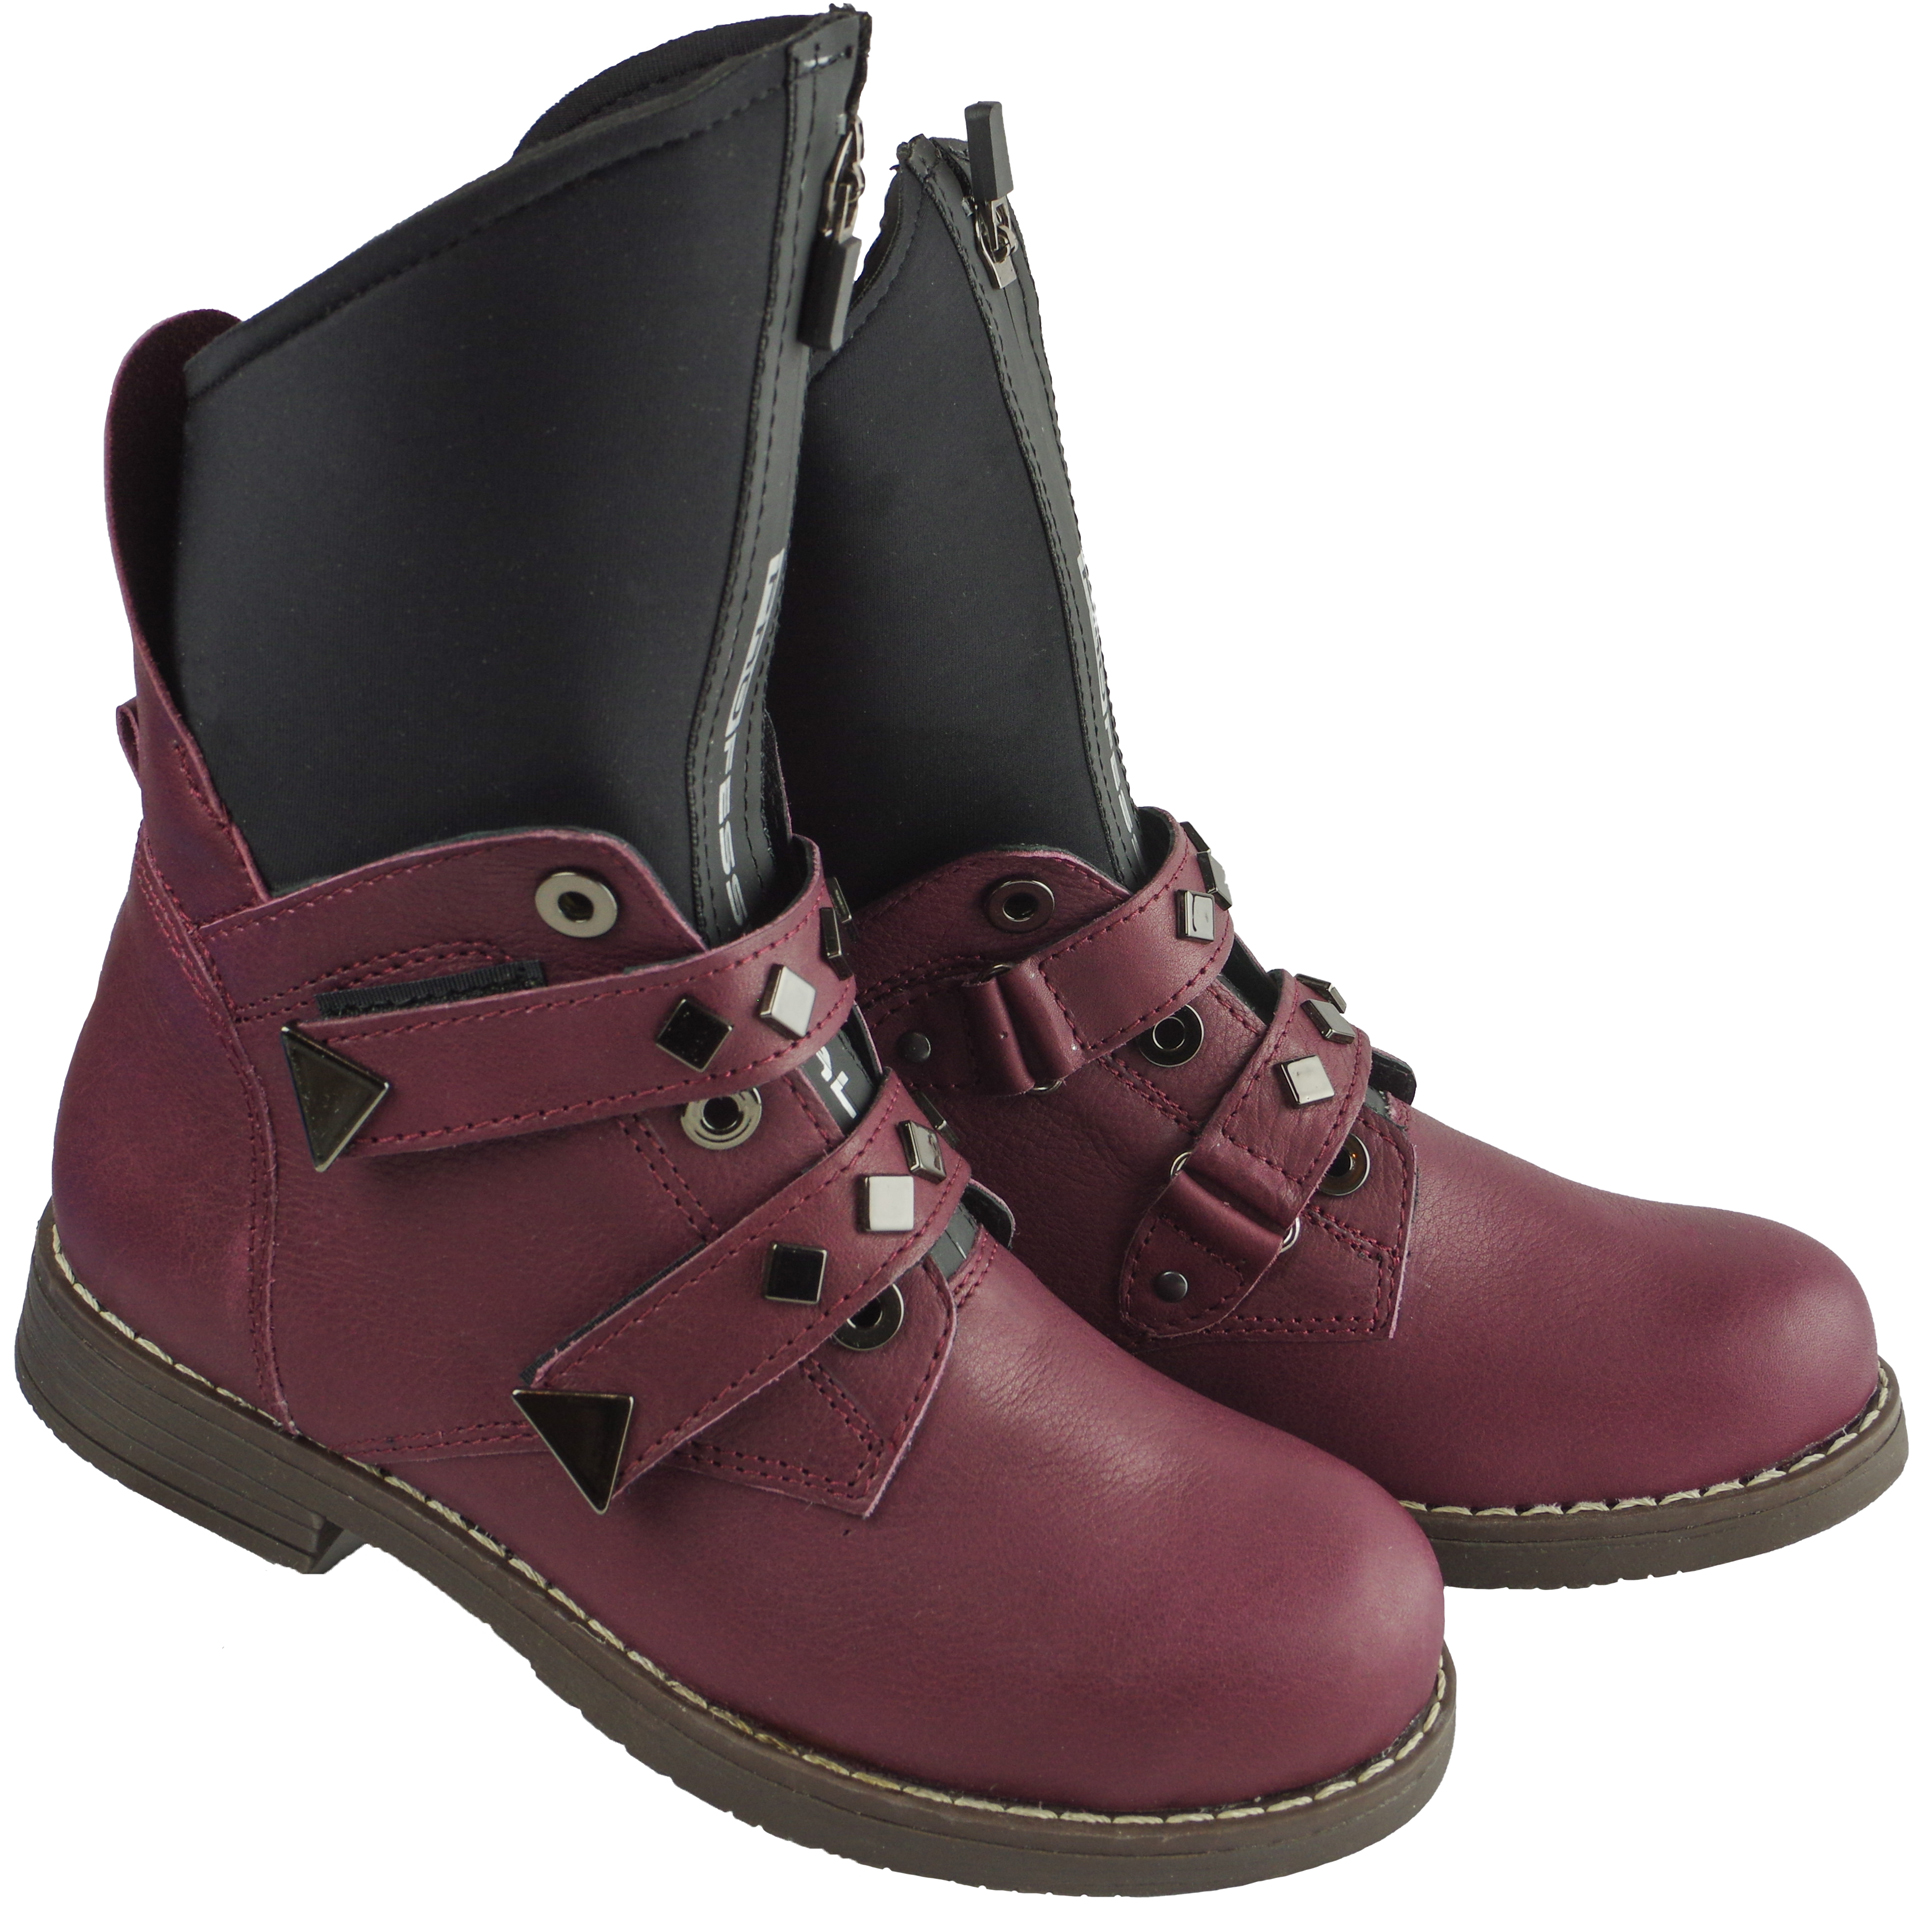 Жіночі черевики (2064) для дівчинки, матеріал Натуральна шкіра, Бордо колір, 32-38 розміри – Sole Kids. Фото 2